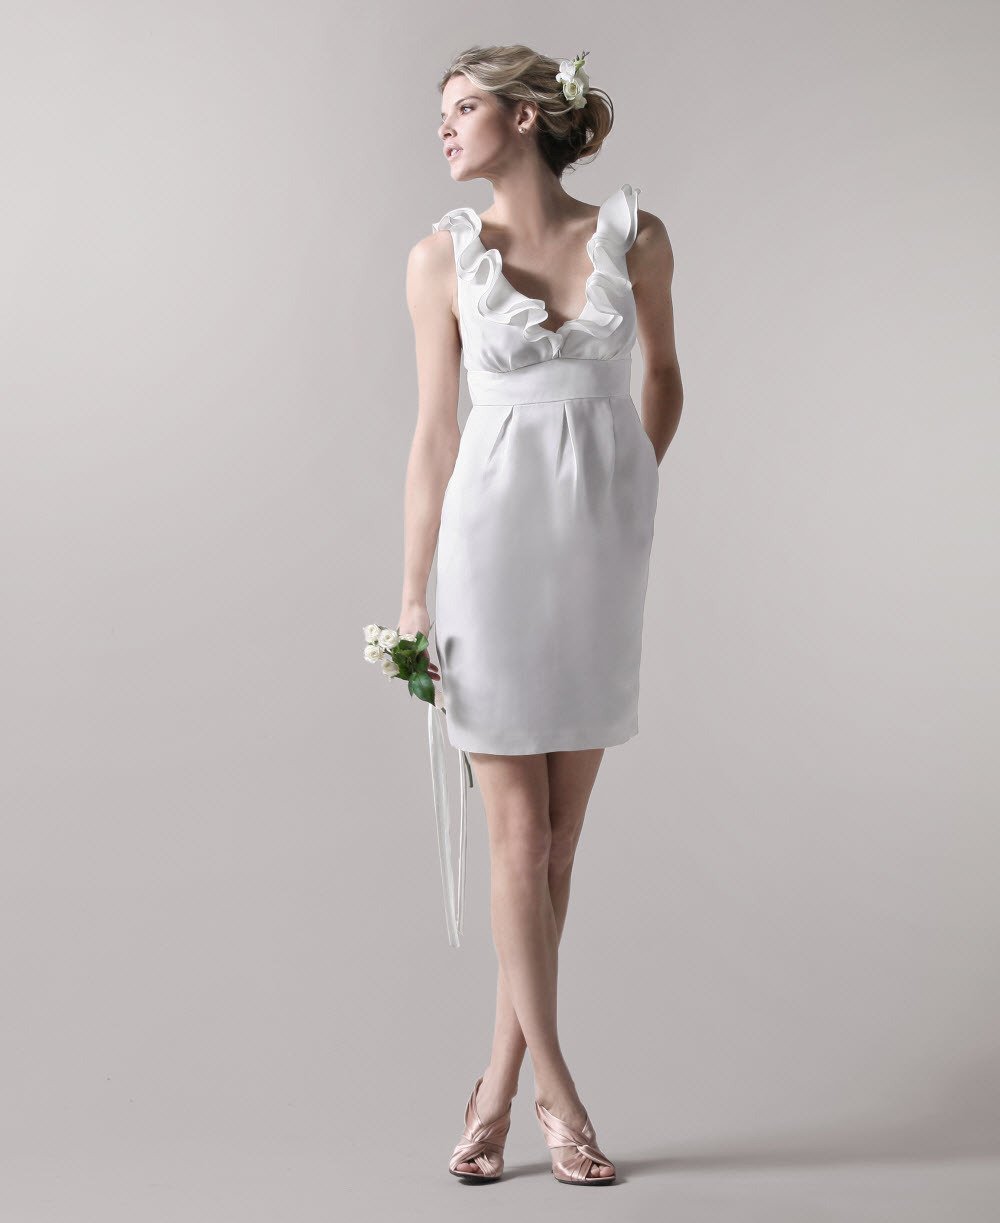 Белое платье на роспись. Короткое белое платье на свадьбу. Платье для неторжественной регистрации брака. Платье для бракосочетания без торжества. Простое свадебное платье.